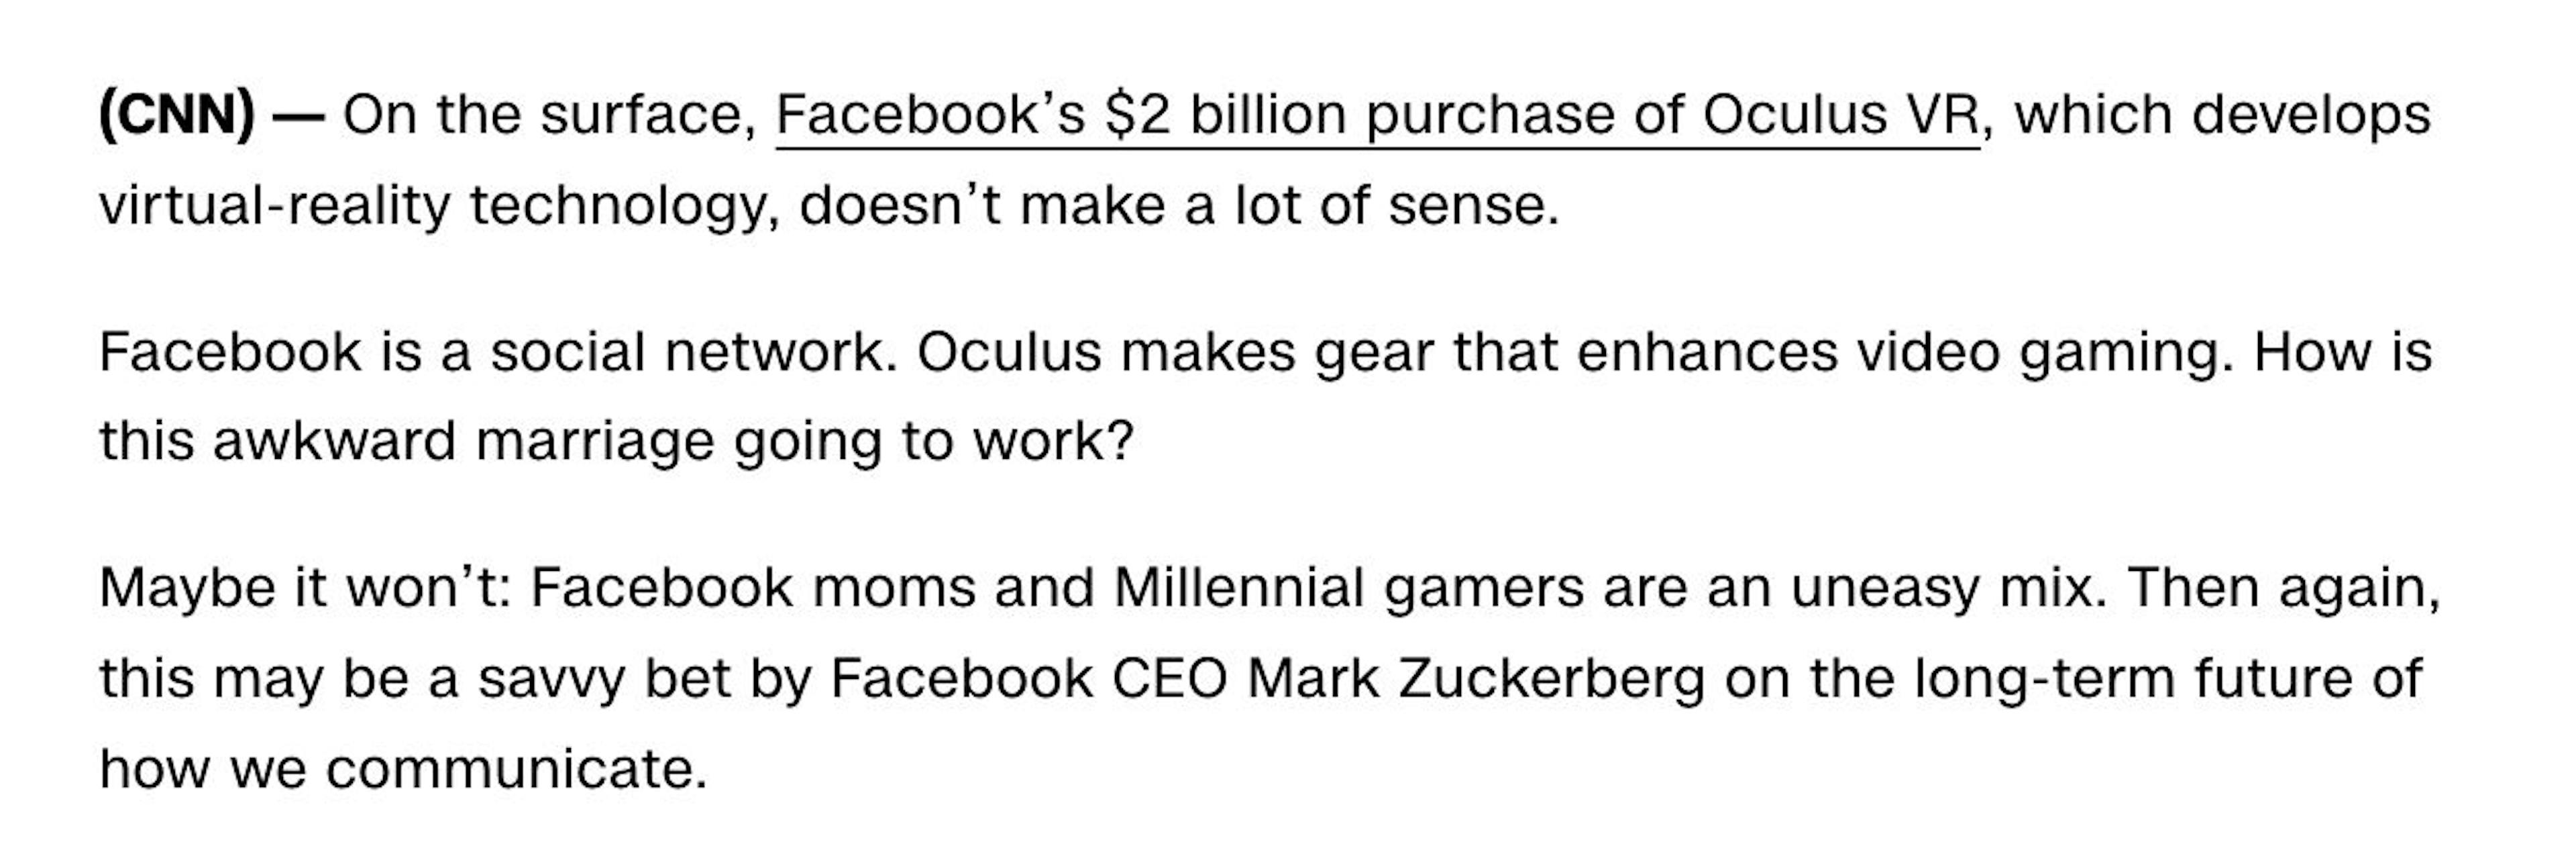 "Oculus VR nedir ve Facebook neden bunun için 2 milyar dolar ödedi?" yayınlandı 26.03.2014